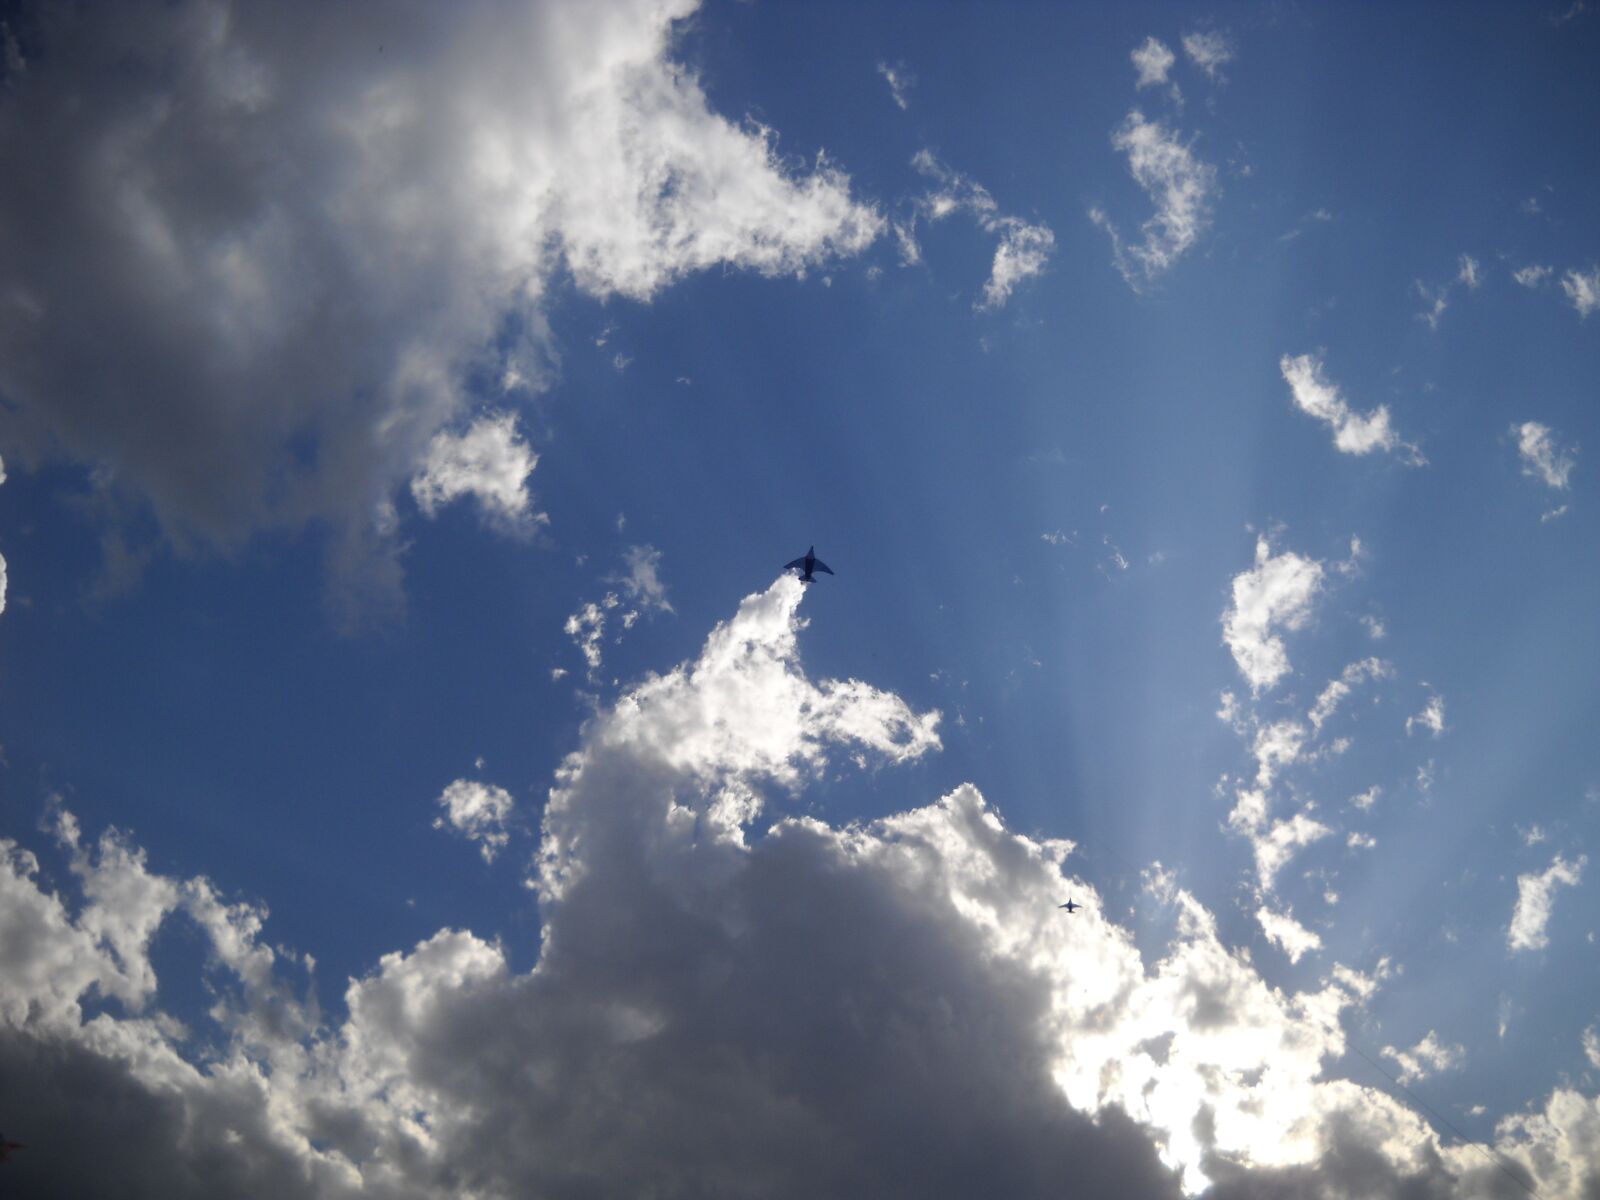 Nikon Coolpix L20 sample photo. Sky, landscape, clouds photography